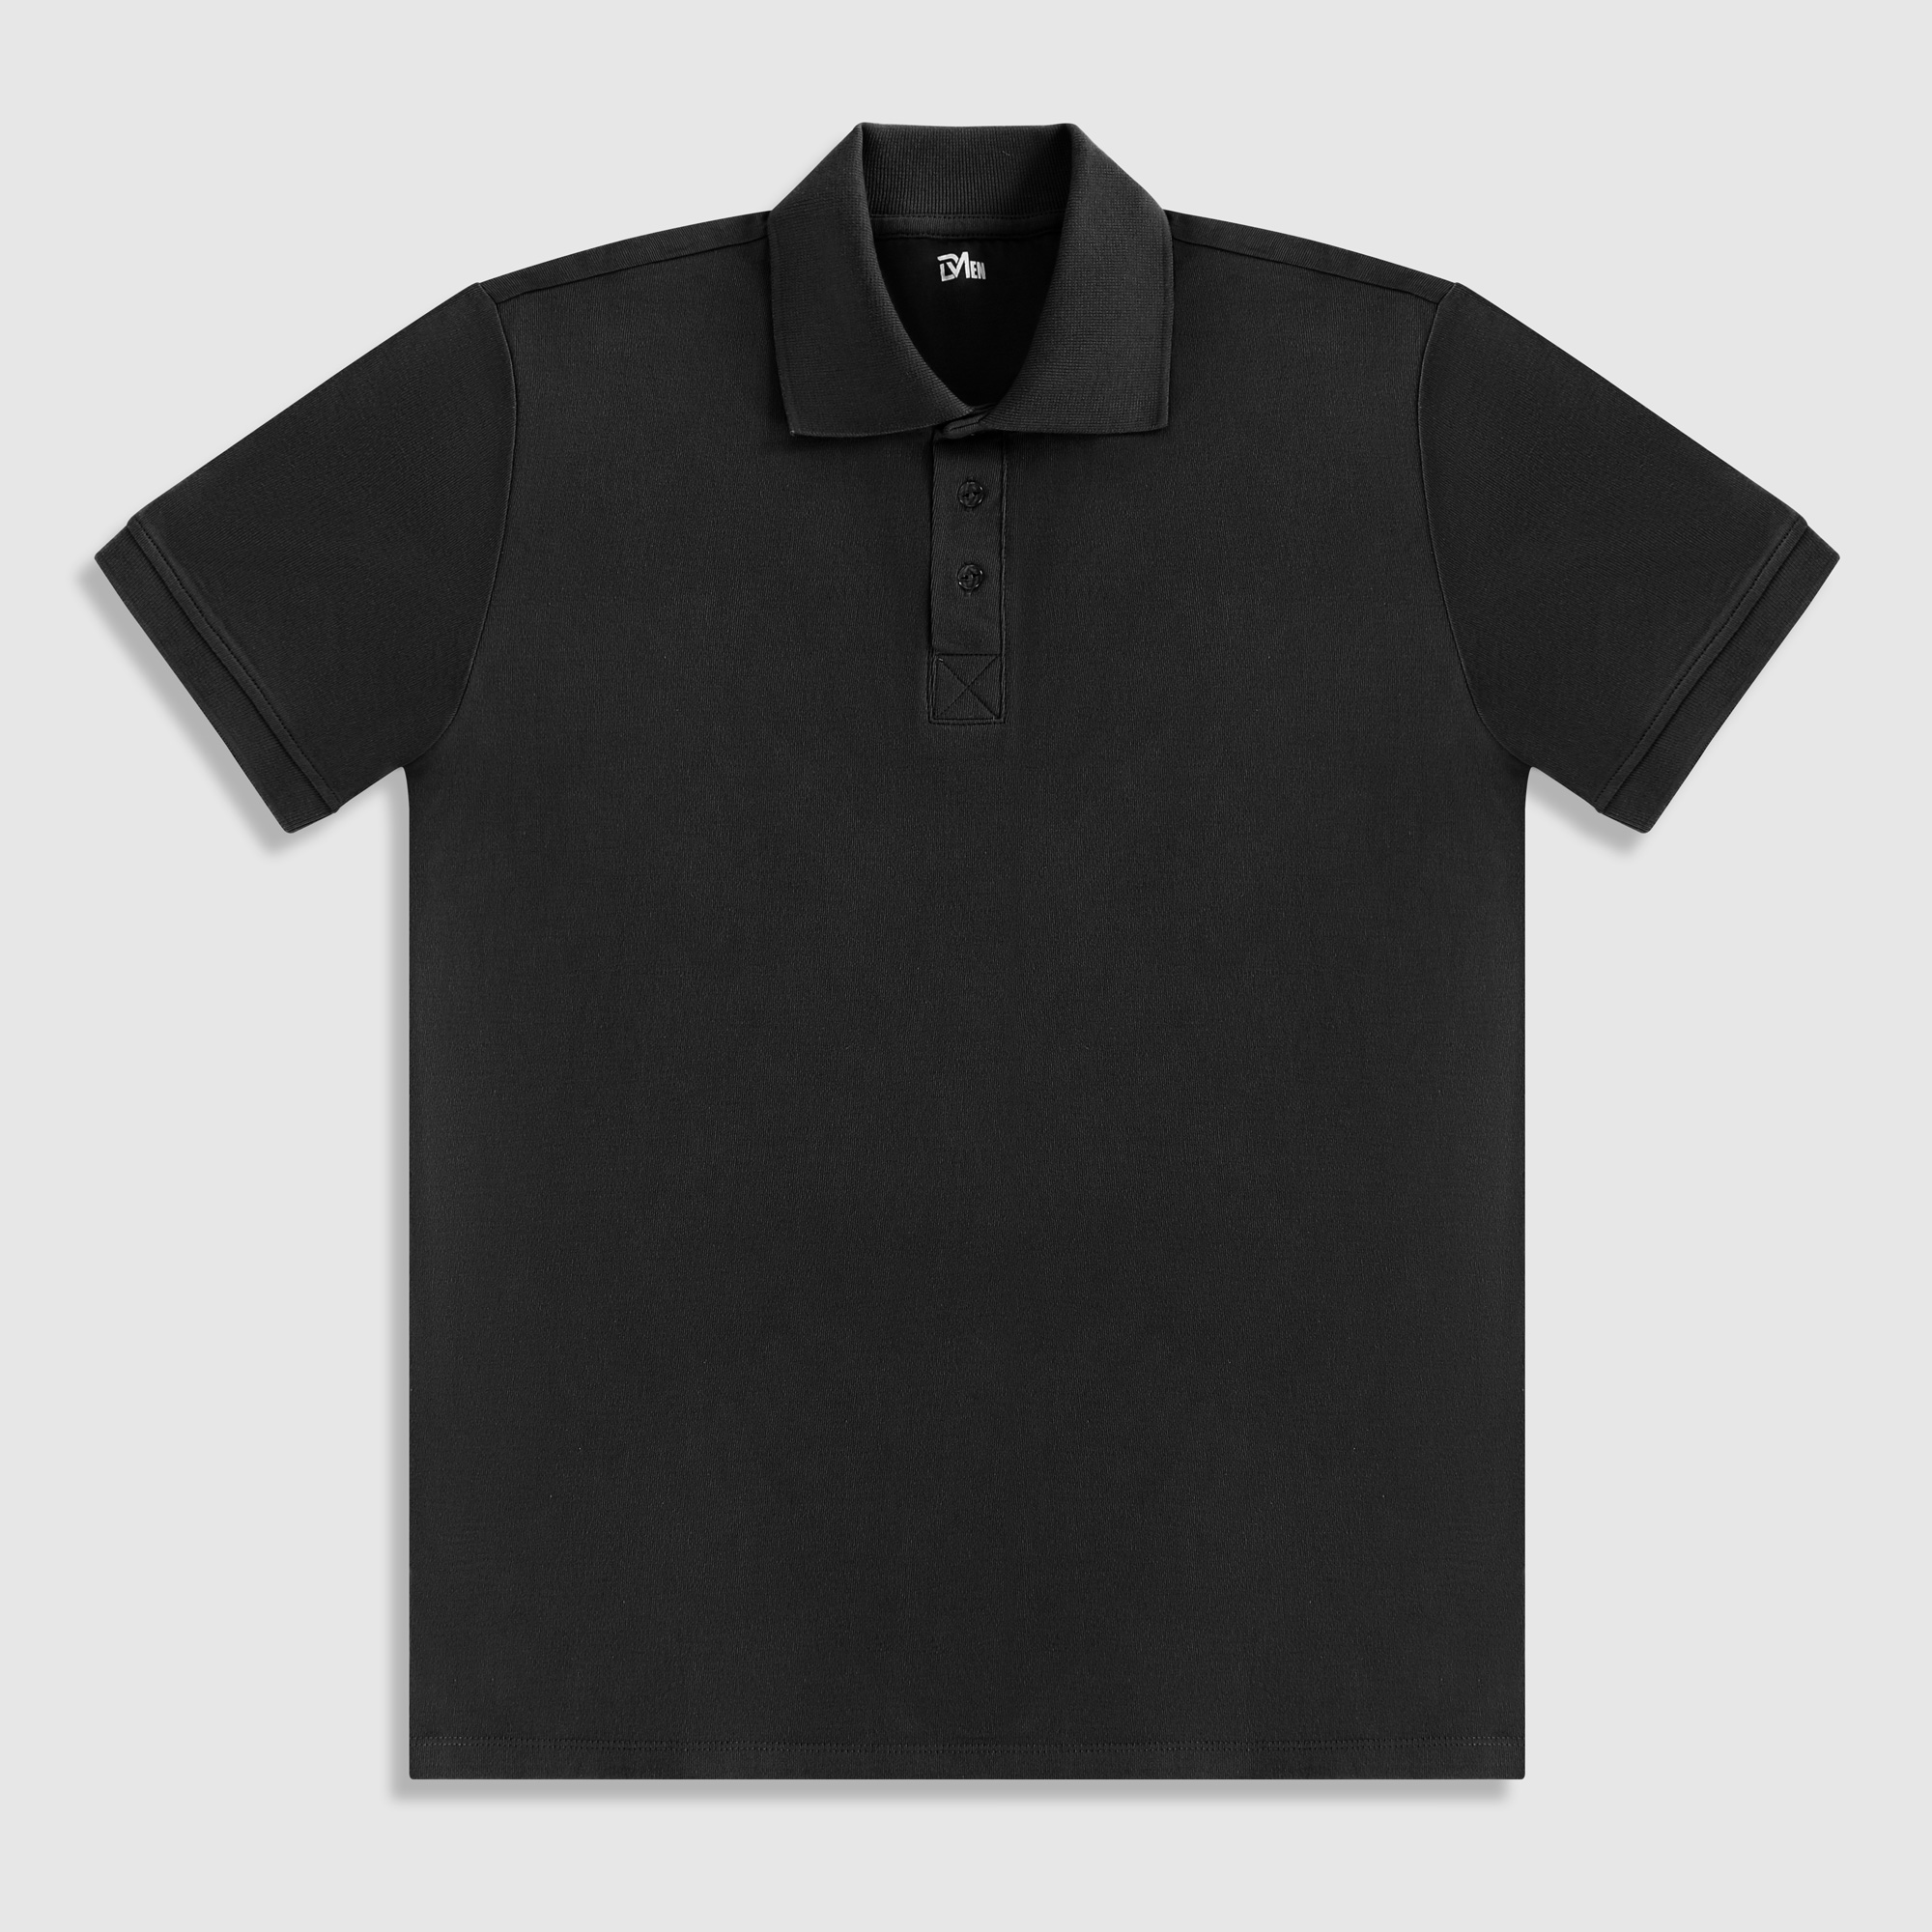 Рубашка мужская Diva Teks поло черная, цвет черный, размер L